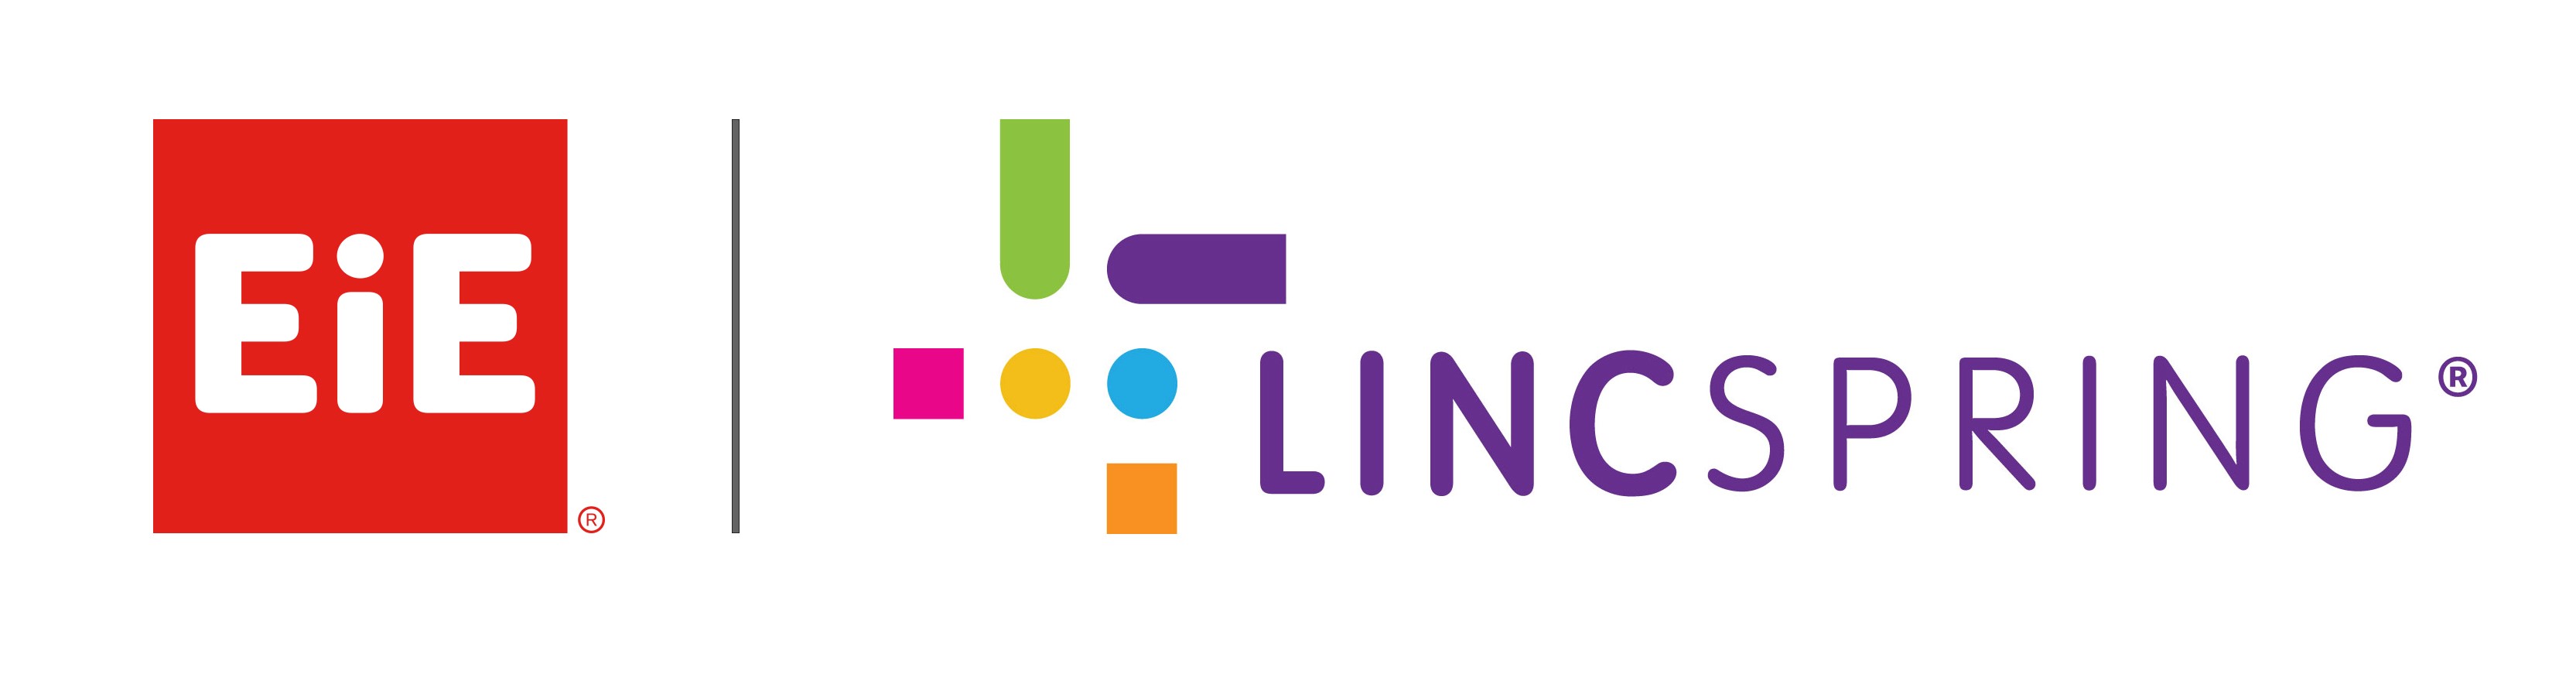 EiE_Linc_logo